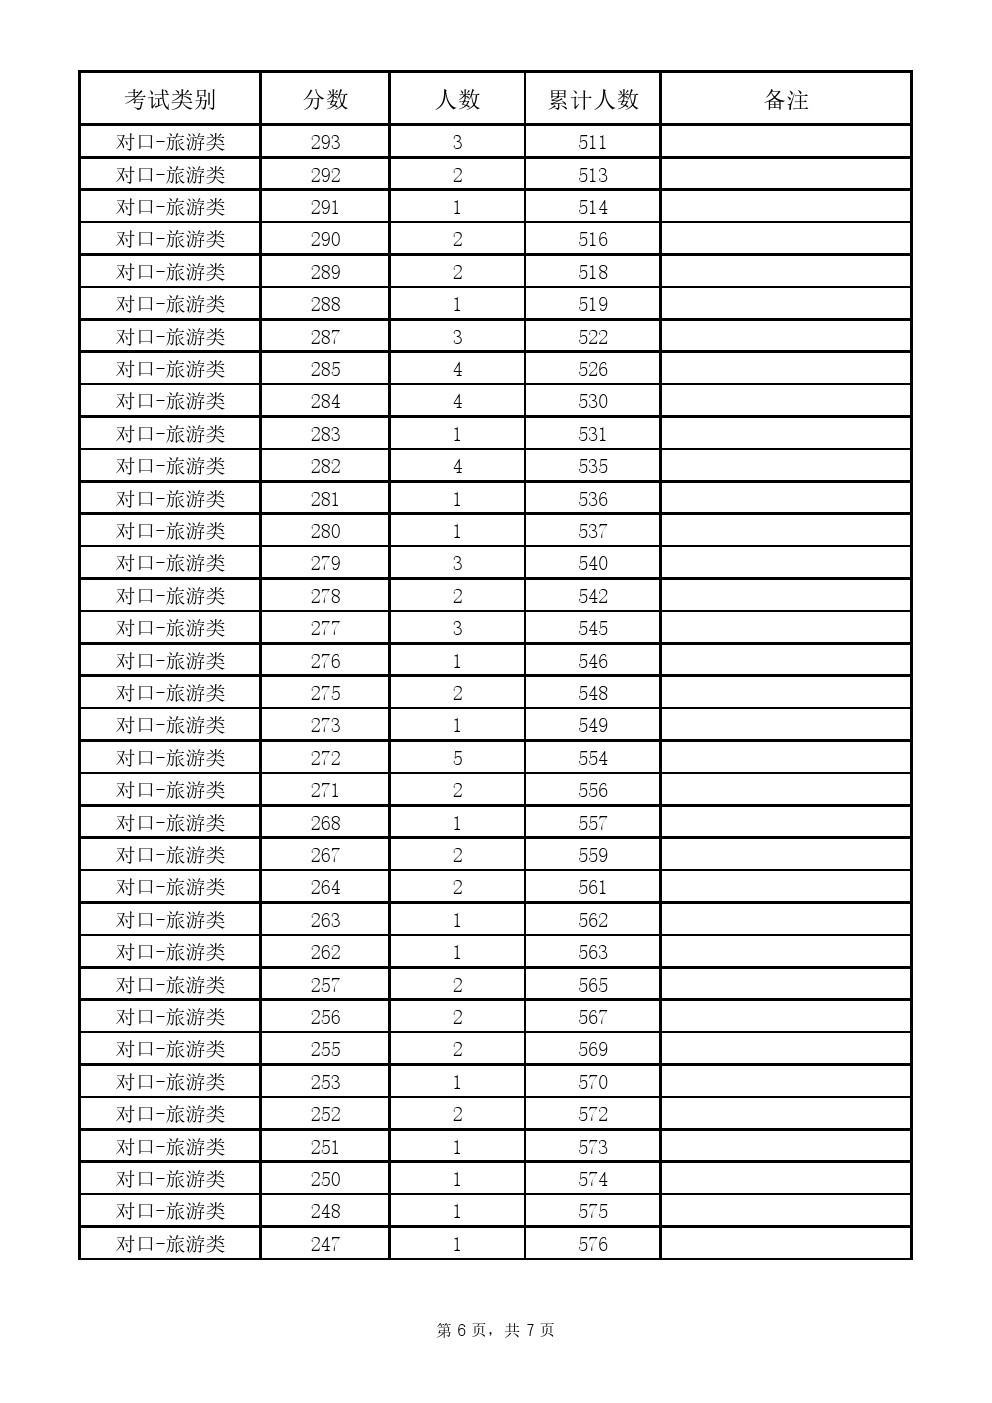 2019年河北省高职单招考试对口旅游类一分一档表 